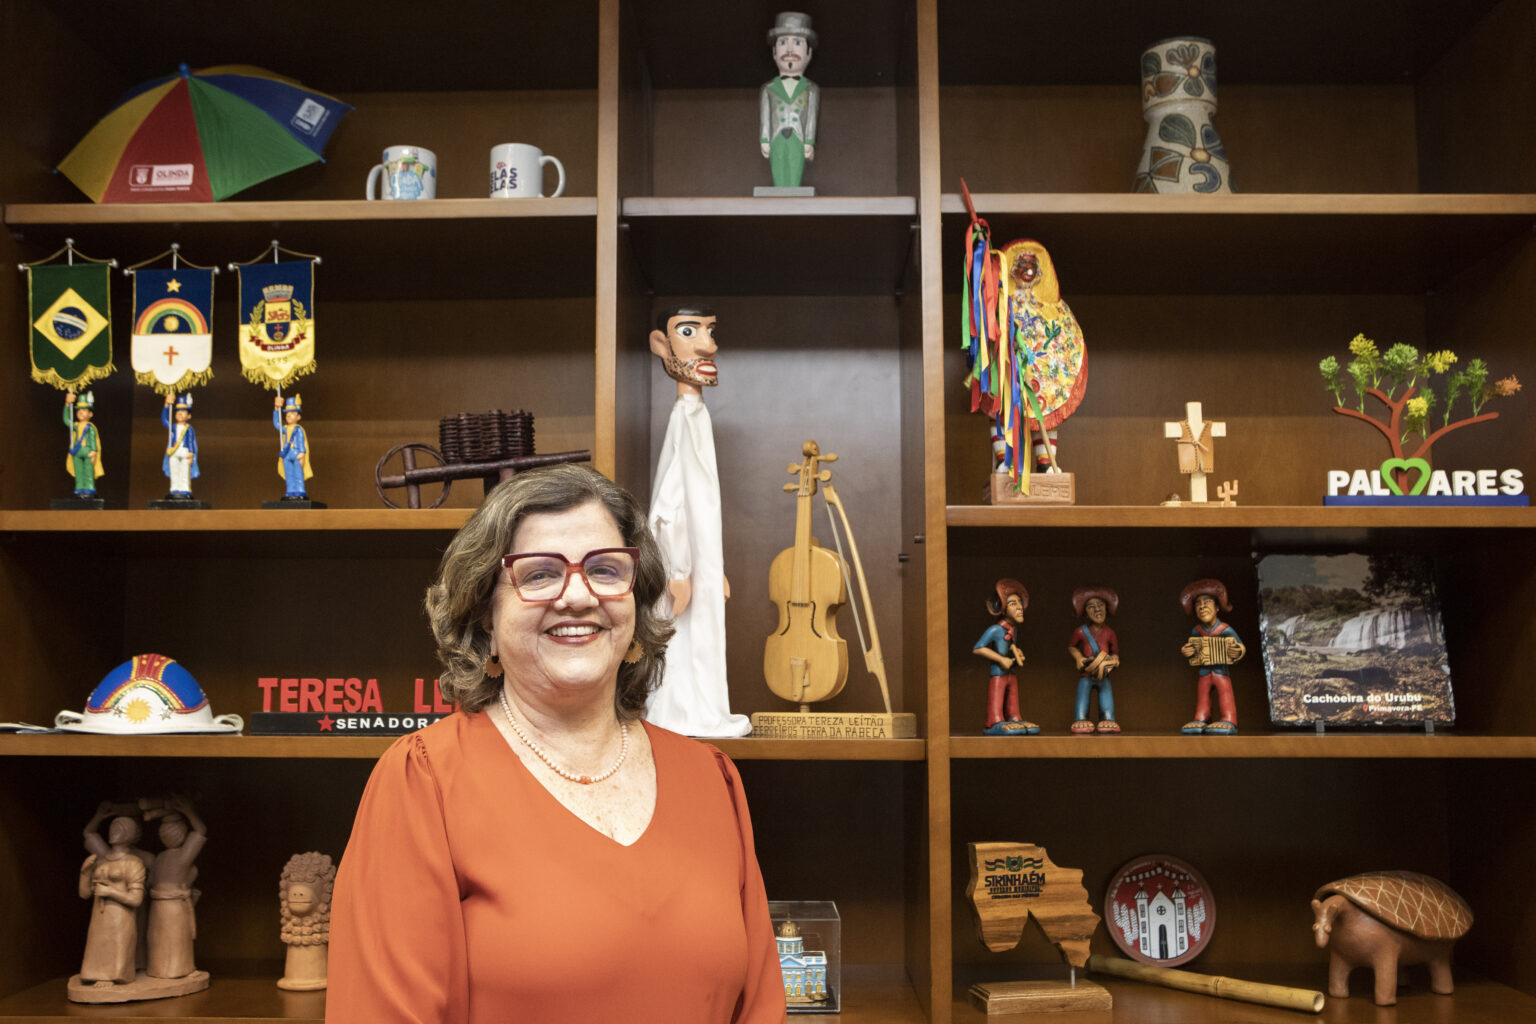  Senadora Teresa Leitão celebra lei que reconhece bandas e blocos como patrimônio cultural brasileiro